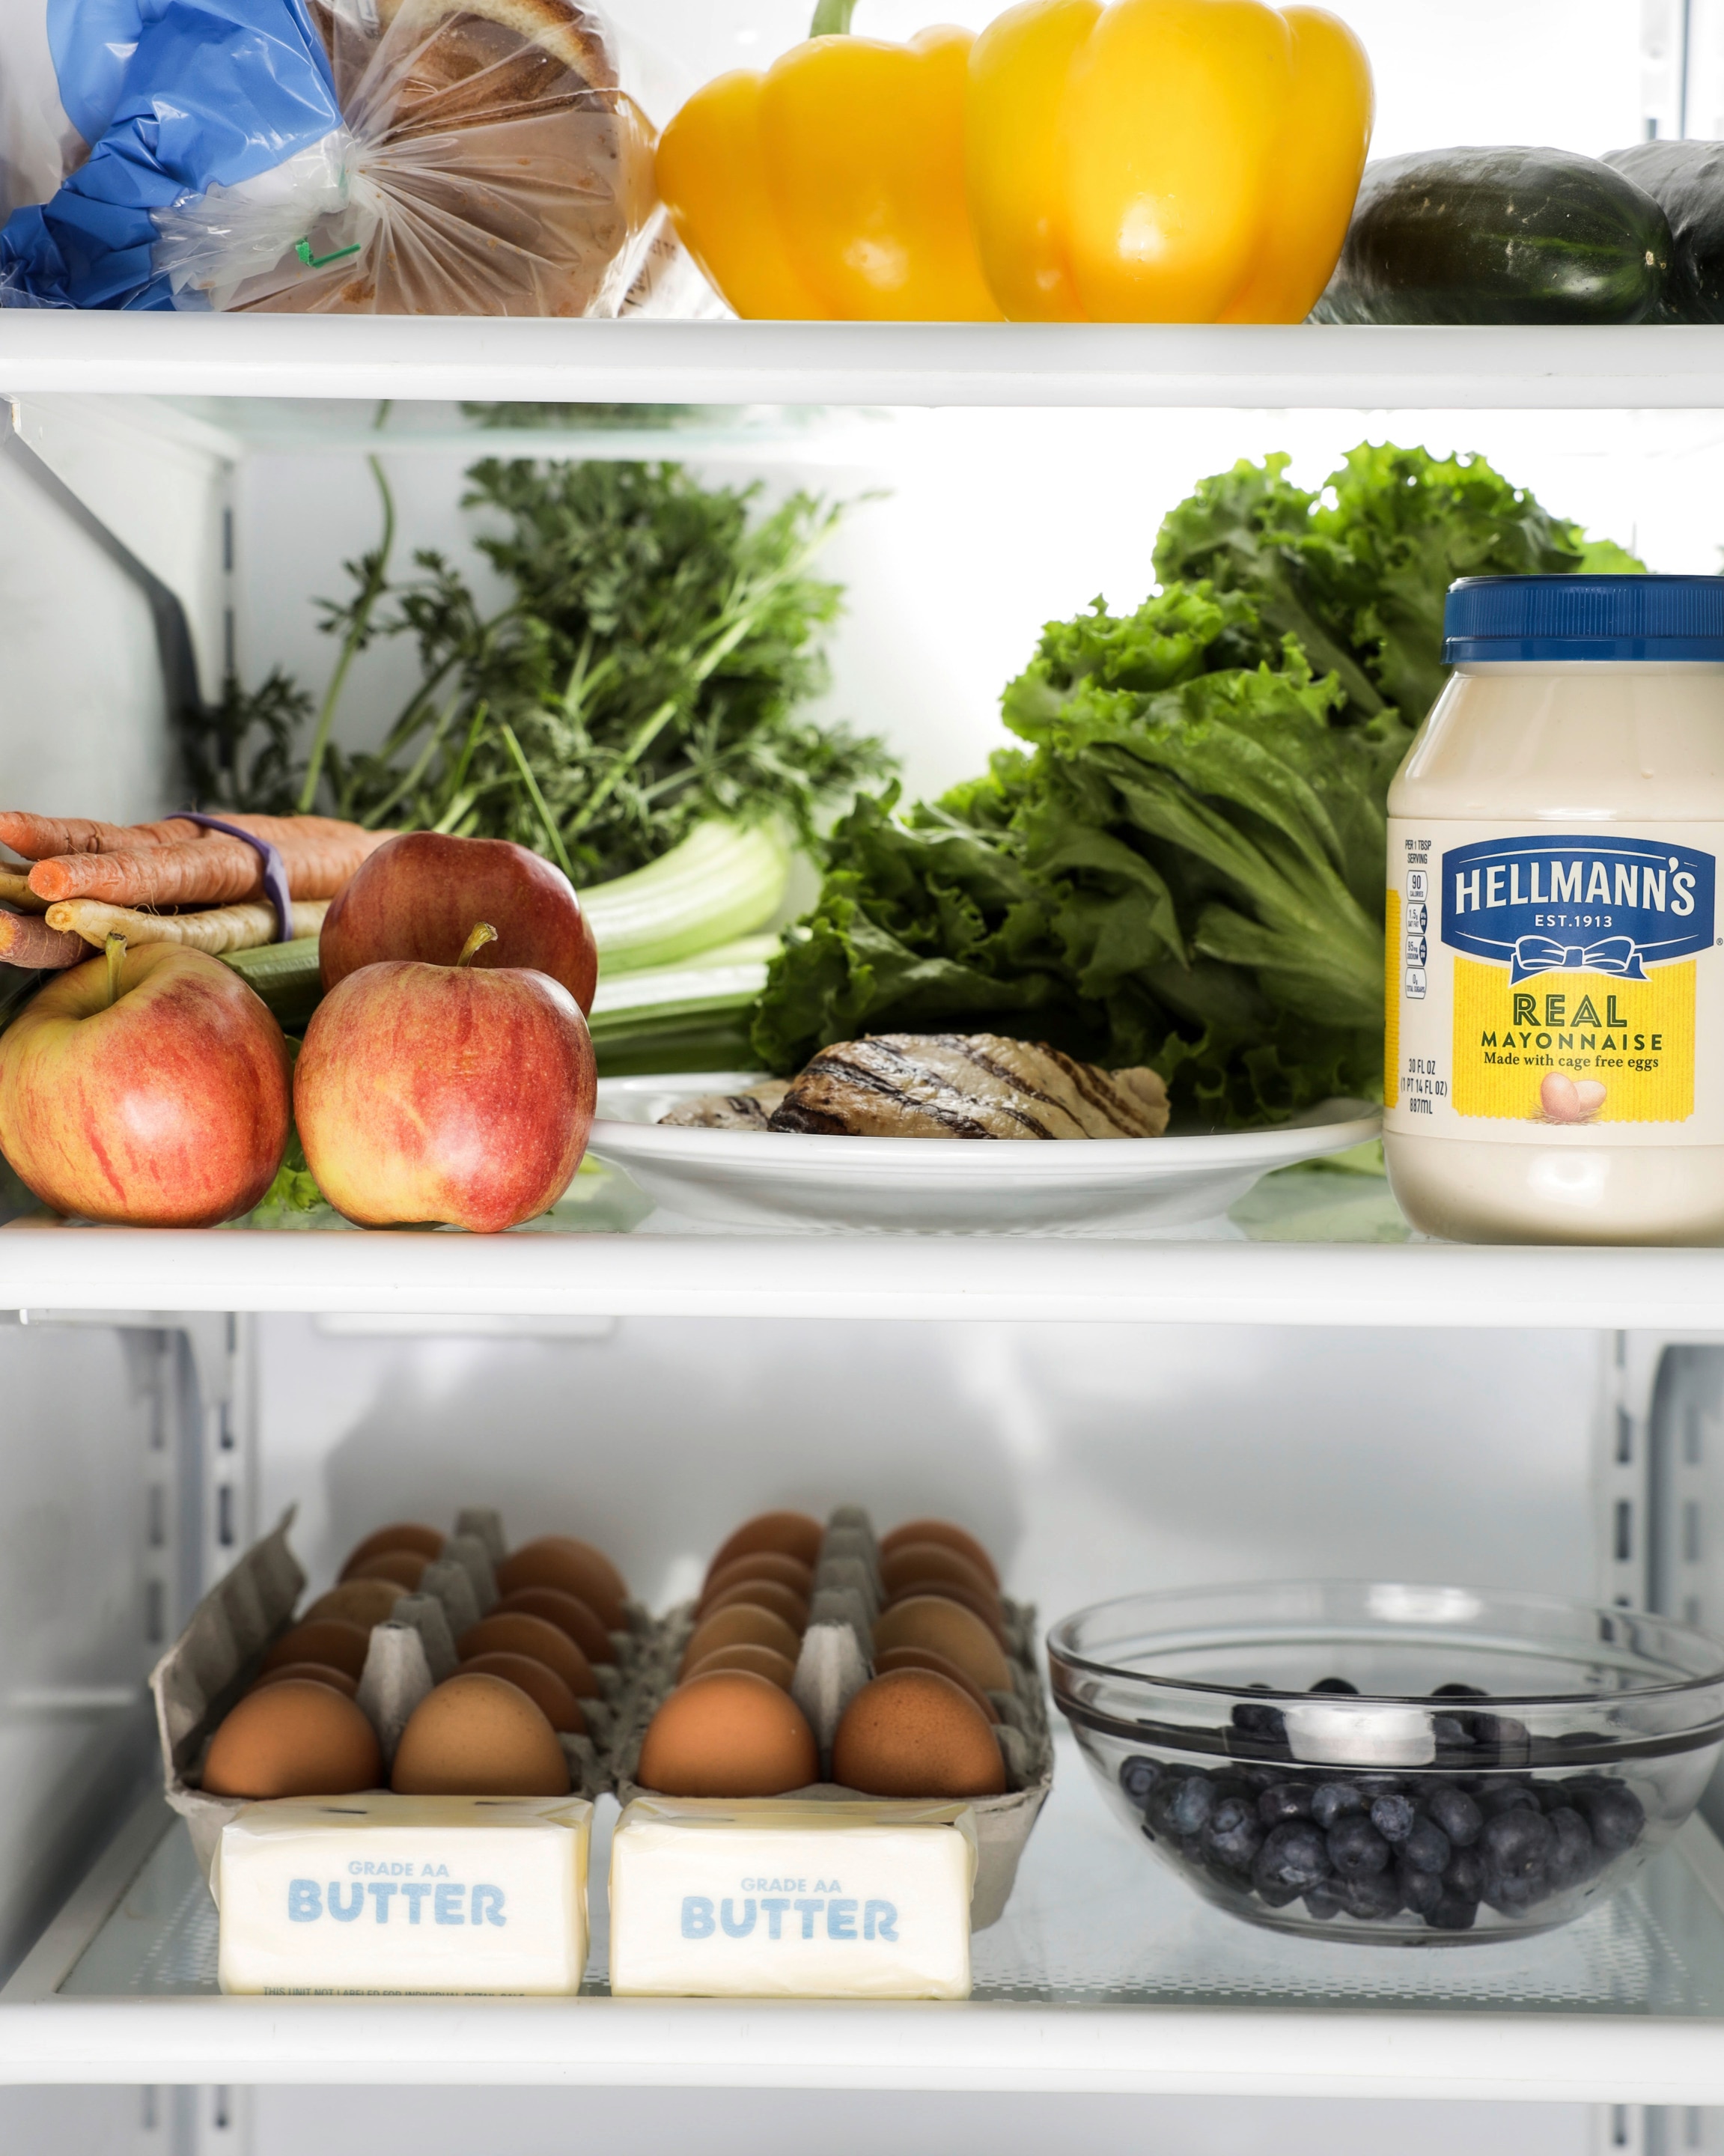 Hellmann's mayonnaise and produce in fridge